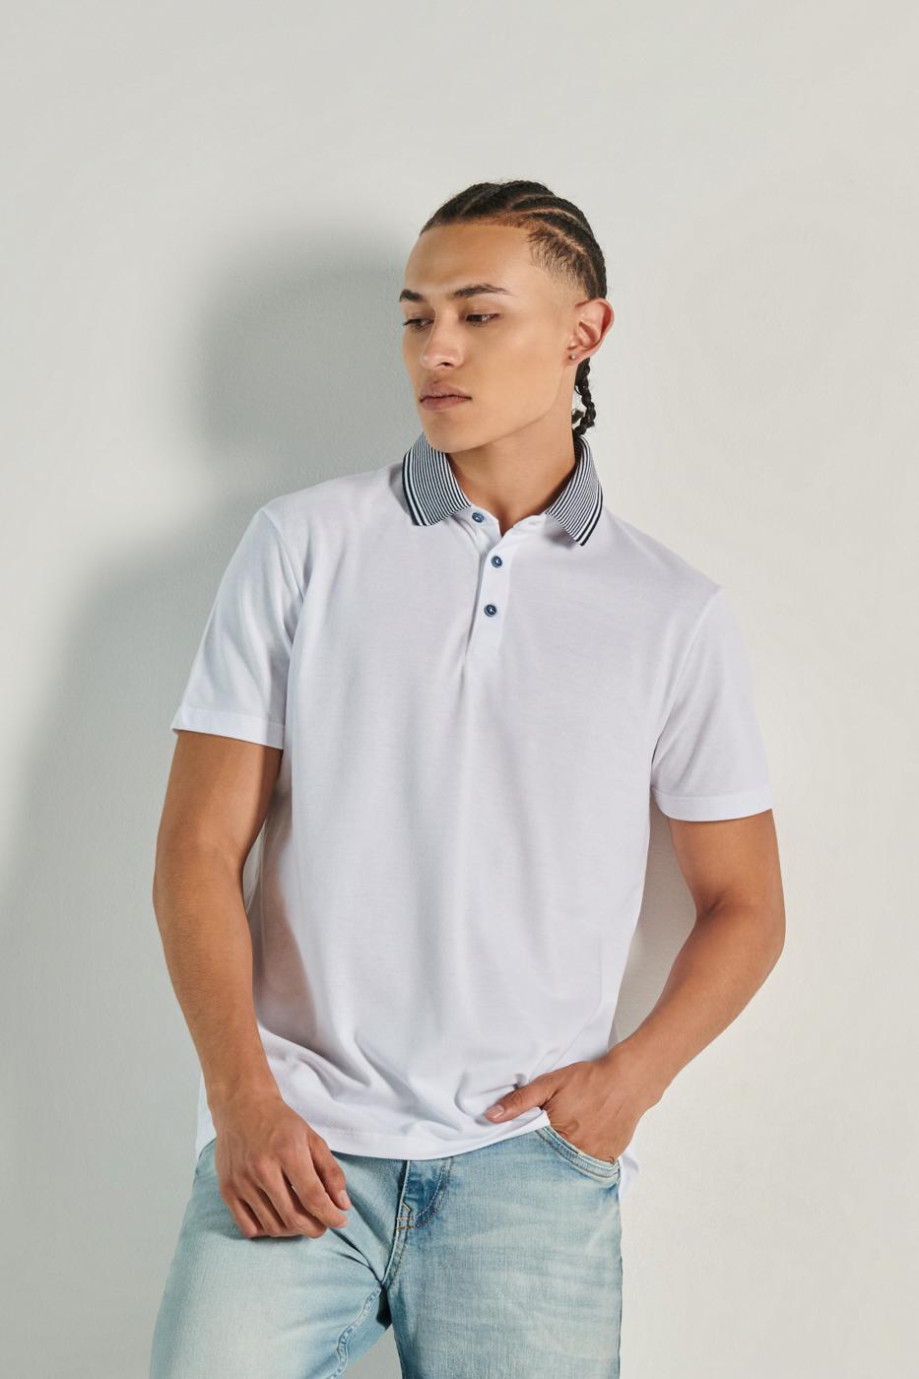 Camiseta unicolor tipo polo con cuello en contraste y manga corta